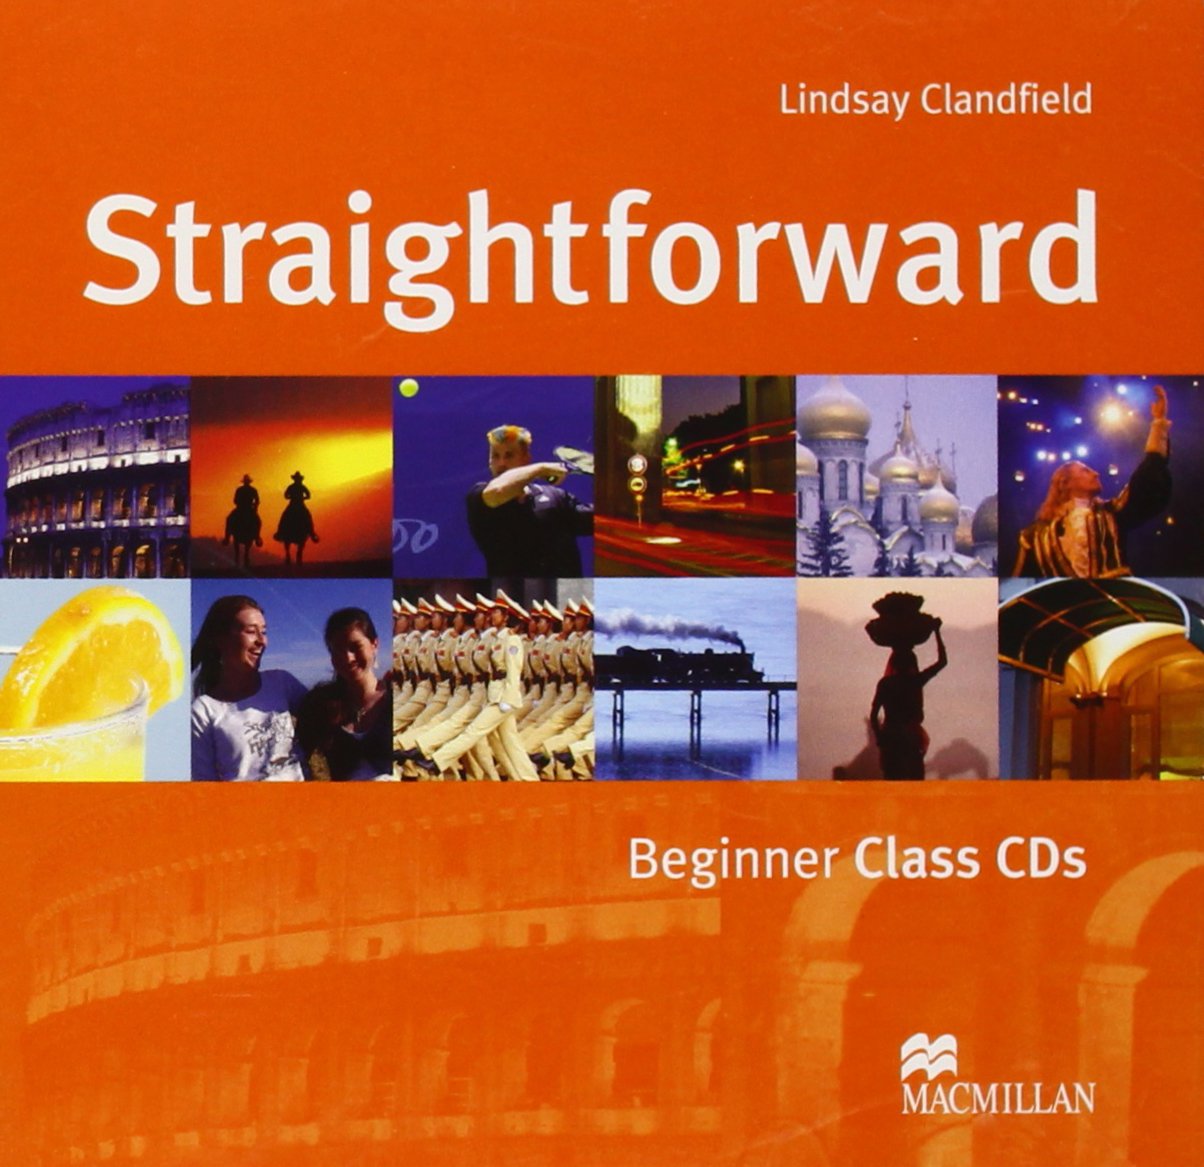 Straightforward - Beginner Class CDs